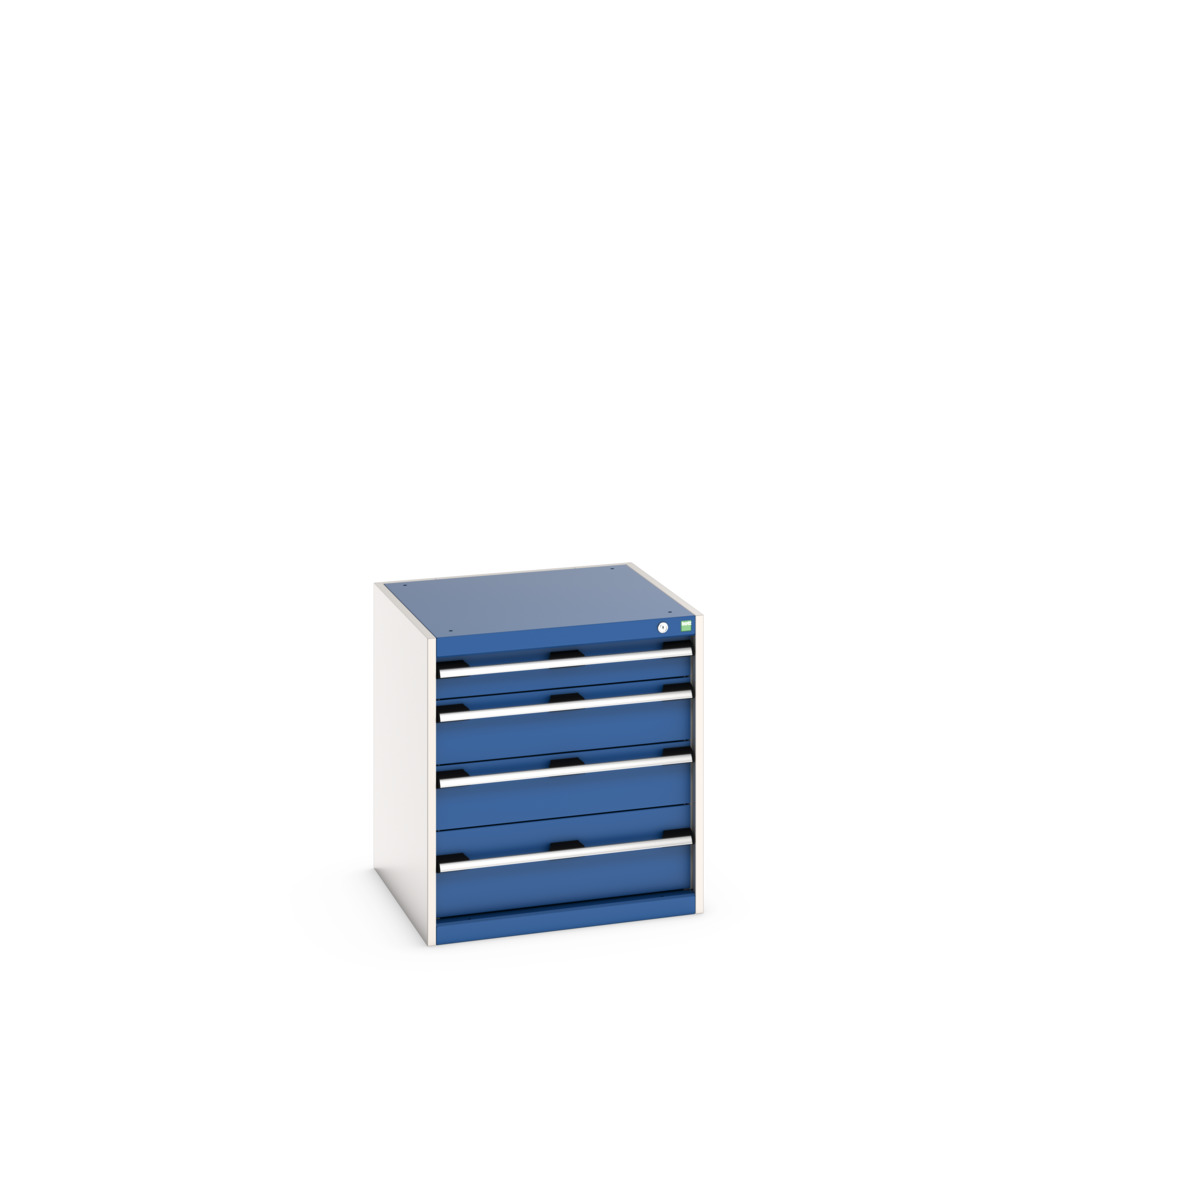 40019025.11V - cubio drawer cabinet